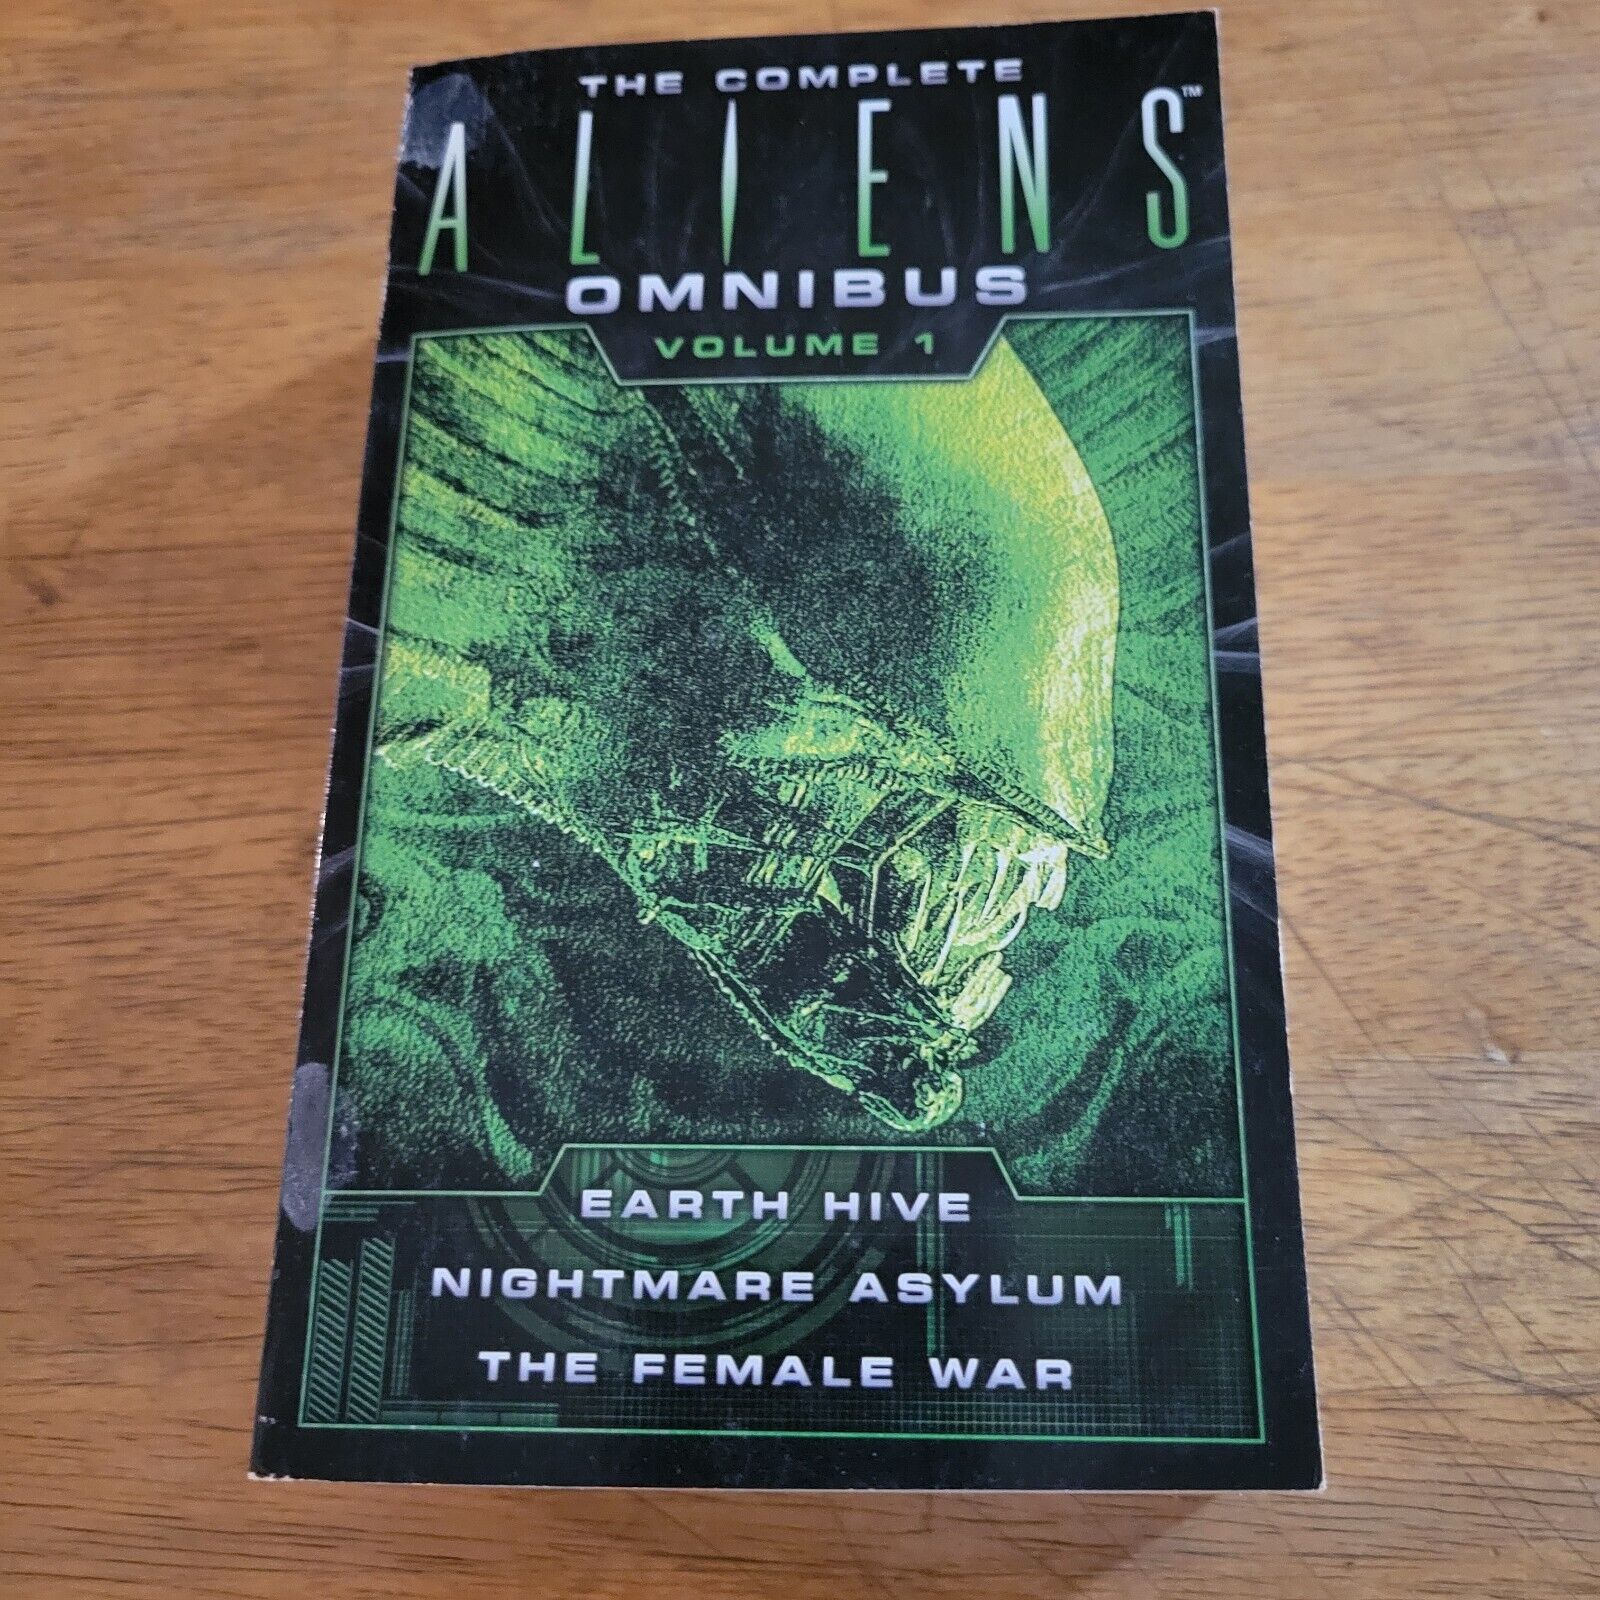 The Complete Aliens Omnibus, Volume 1 